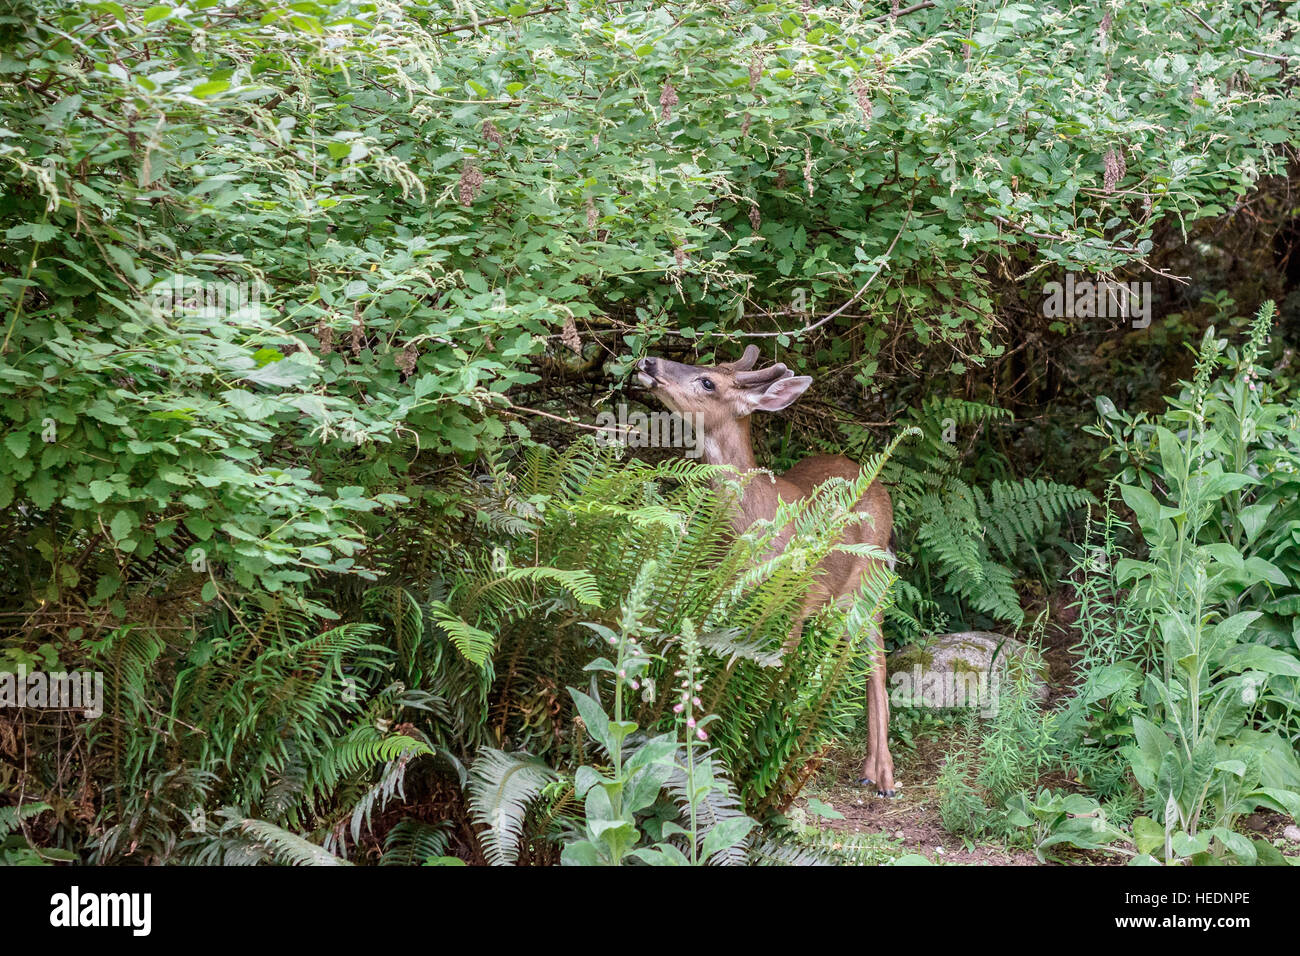 Eine junge Hirsche durchsucht auf Oceanspray und andere blühende Sträucher in einem bewaldeten Garten am Waldrand. Stockfoto